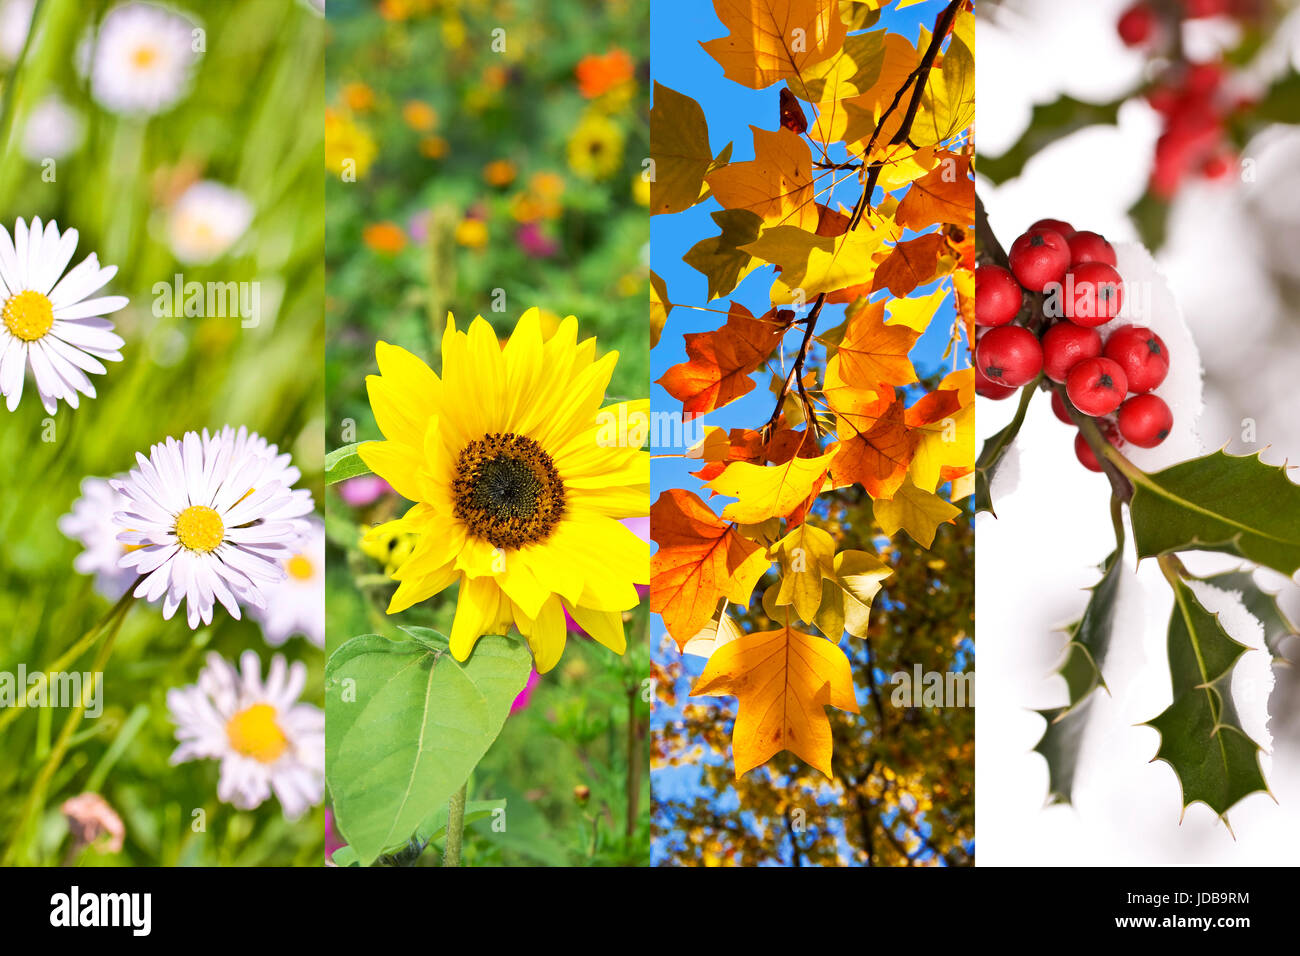 Piante e fiori in primavera, estate, autunno, inverno, photo collage, quattro stagioni concept Foto Stock